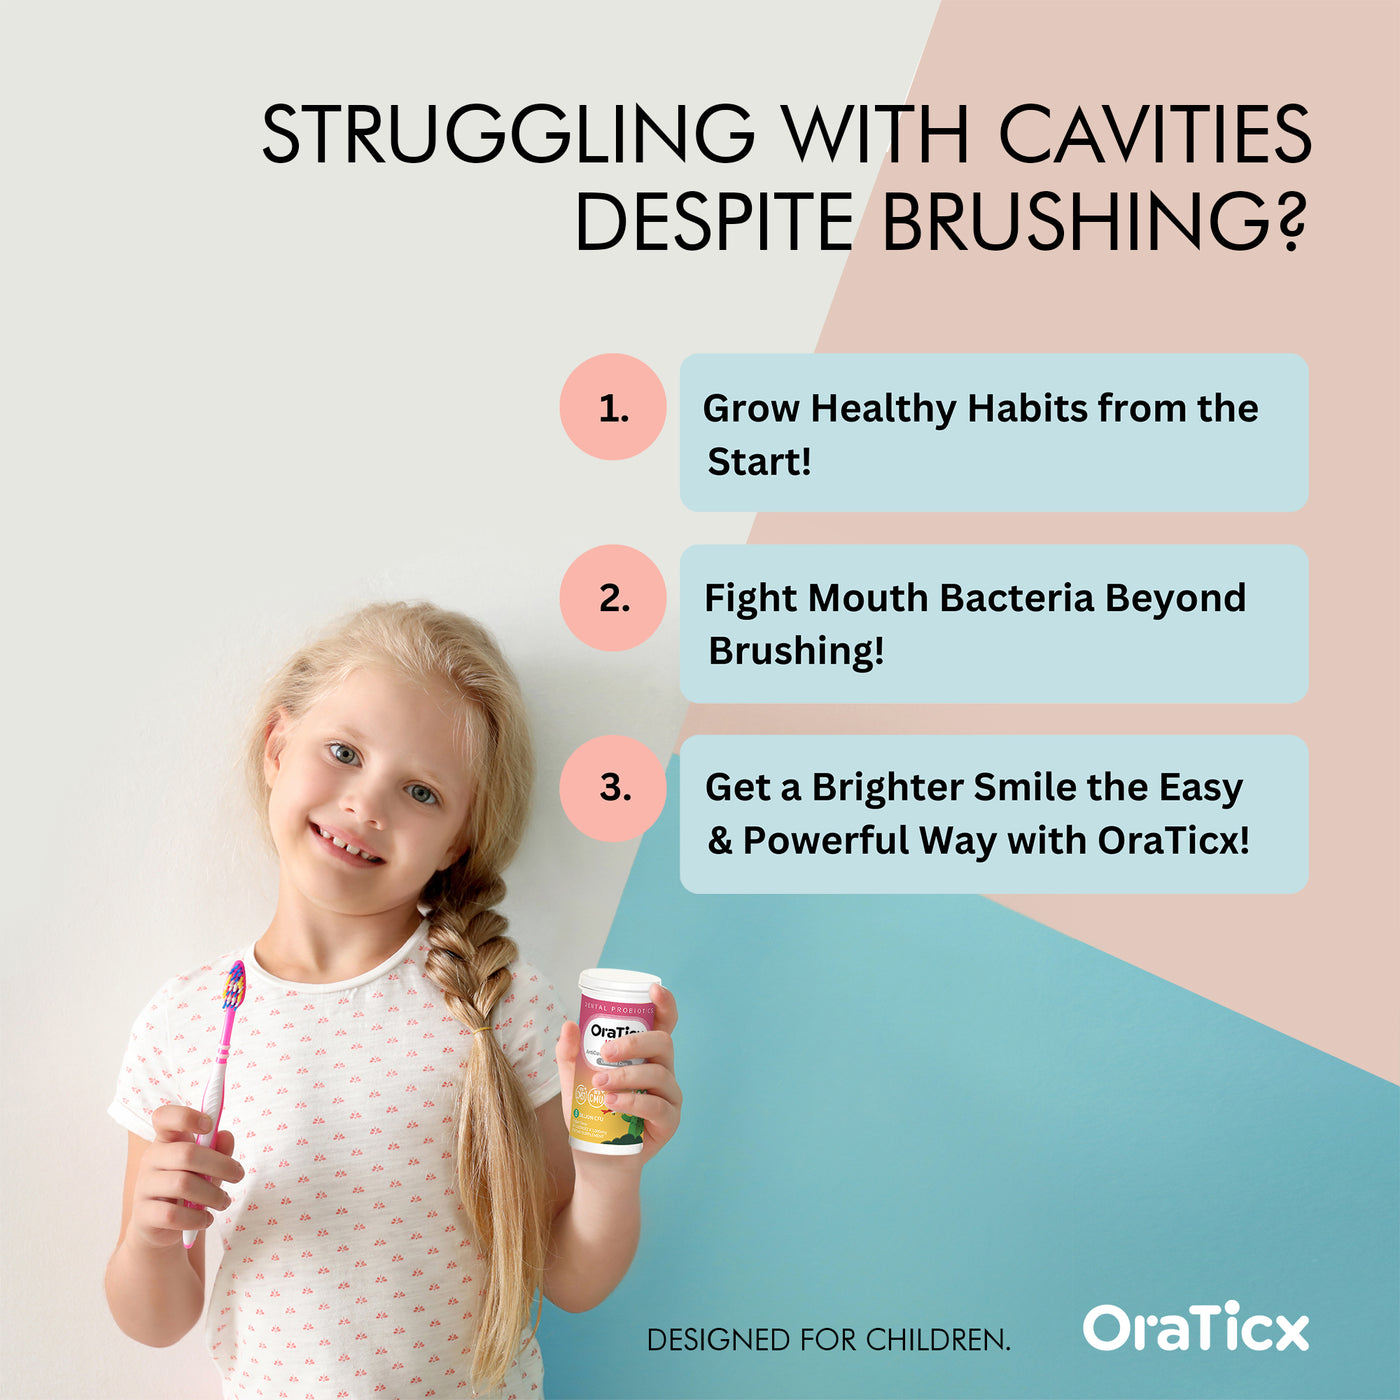 OraTicx Kids Dental Probiotic